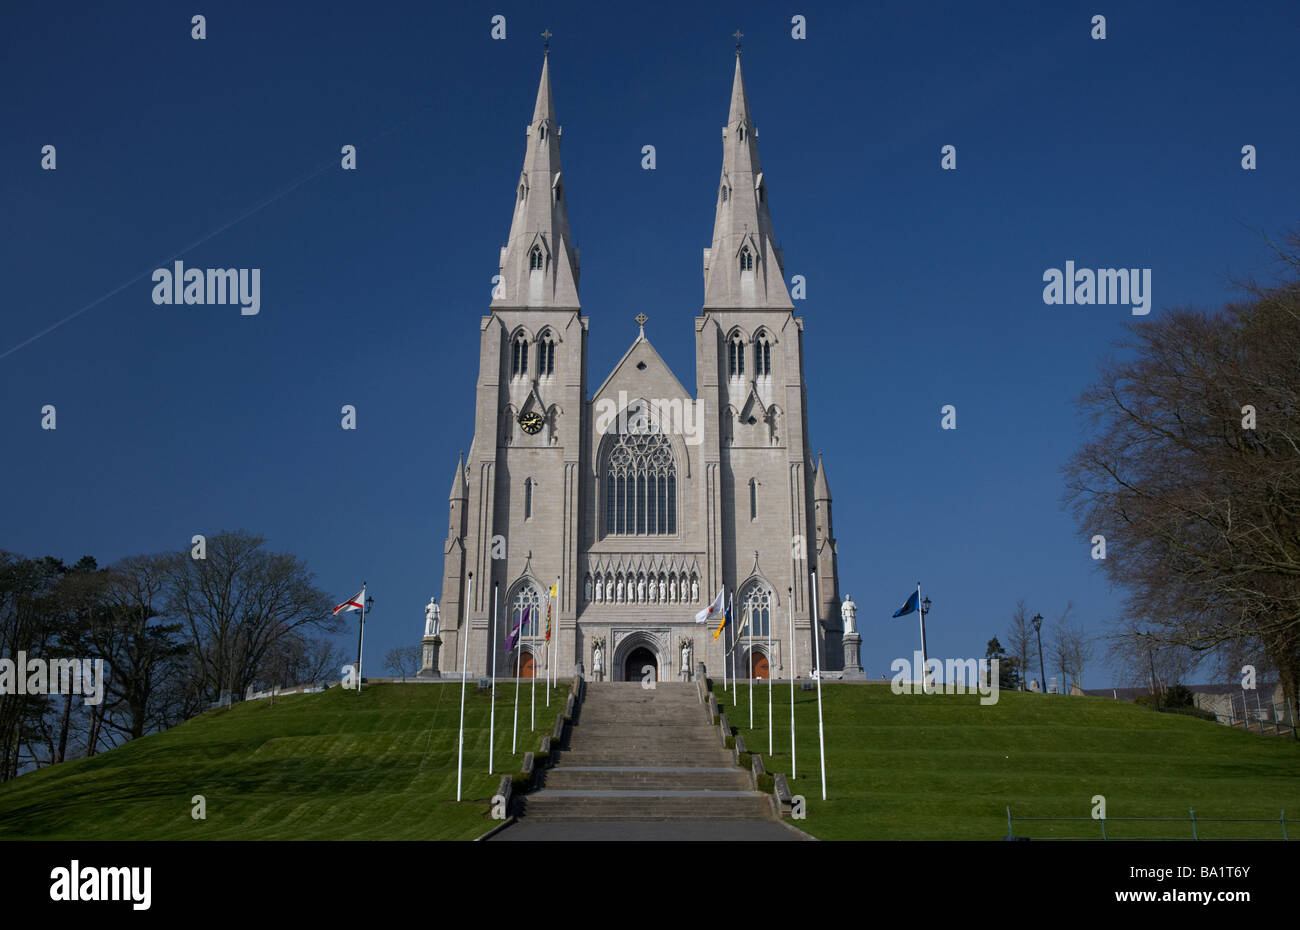 St Patricks cathédrale catholique romaine de la ville d'Armagh County Armagh en Irlande du Nord Banque D'Images